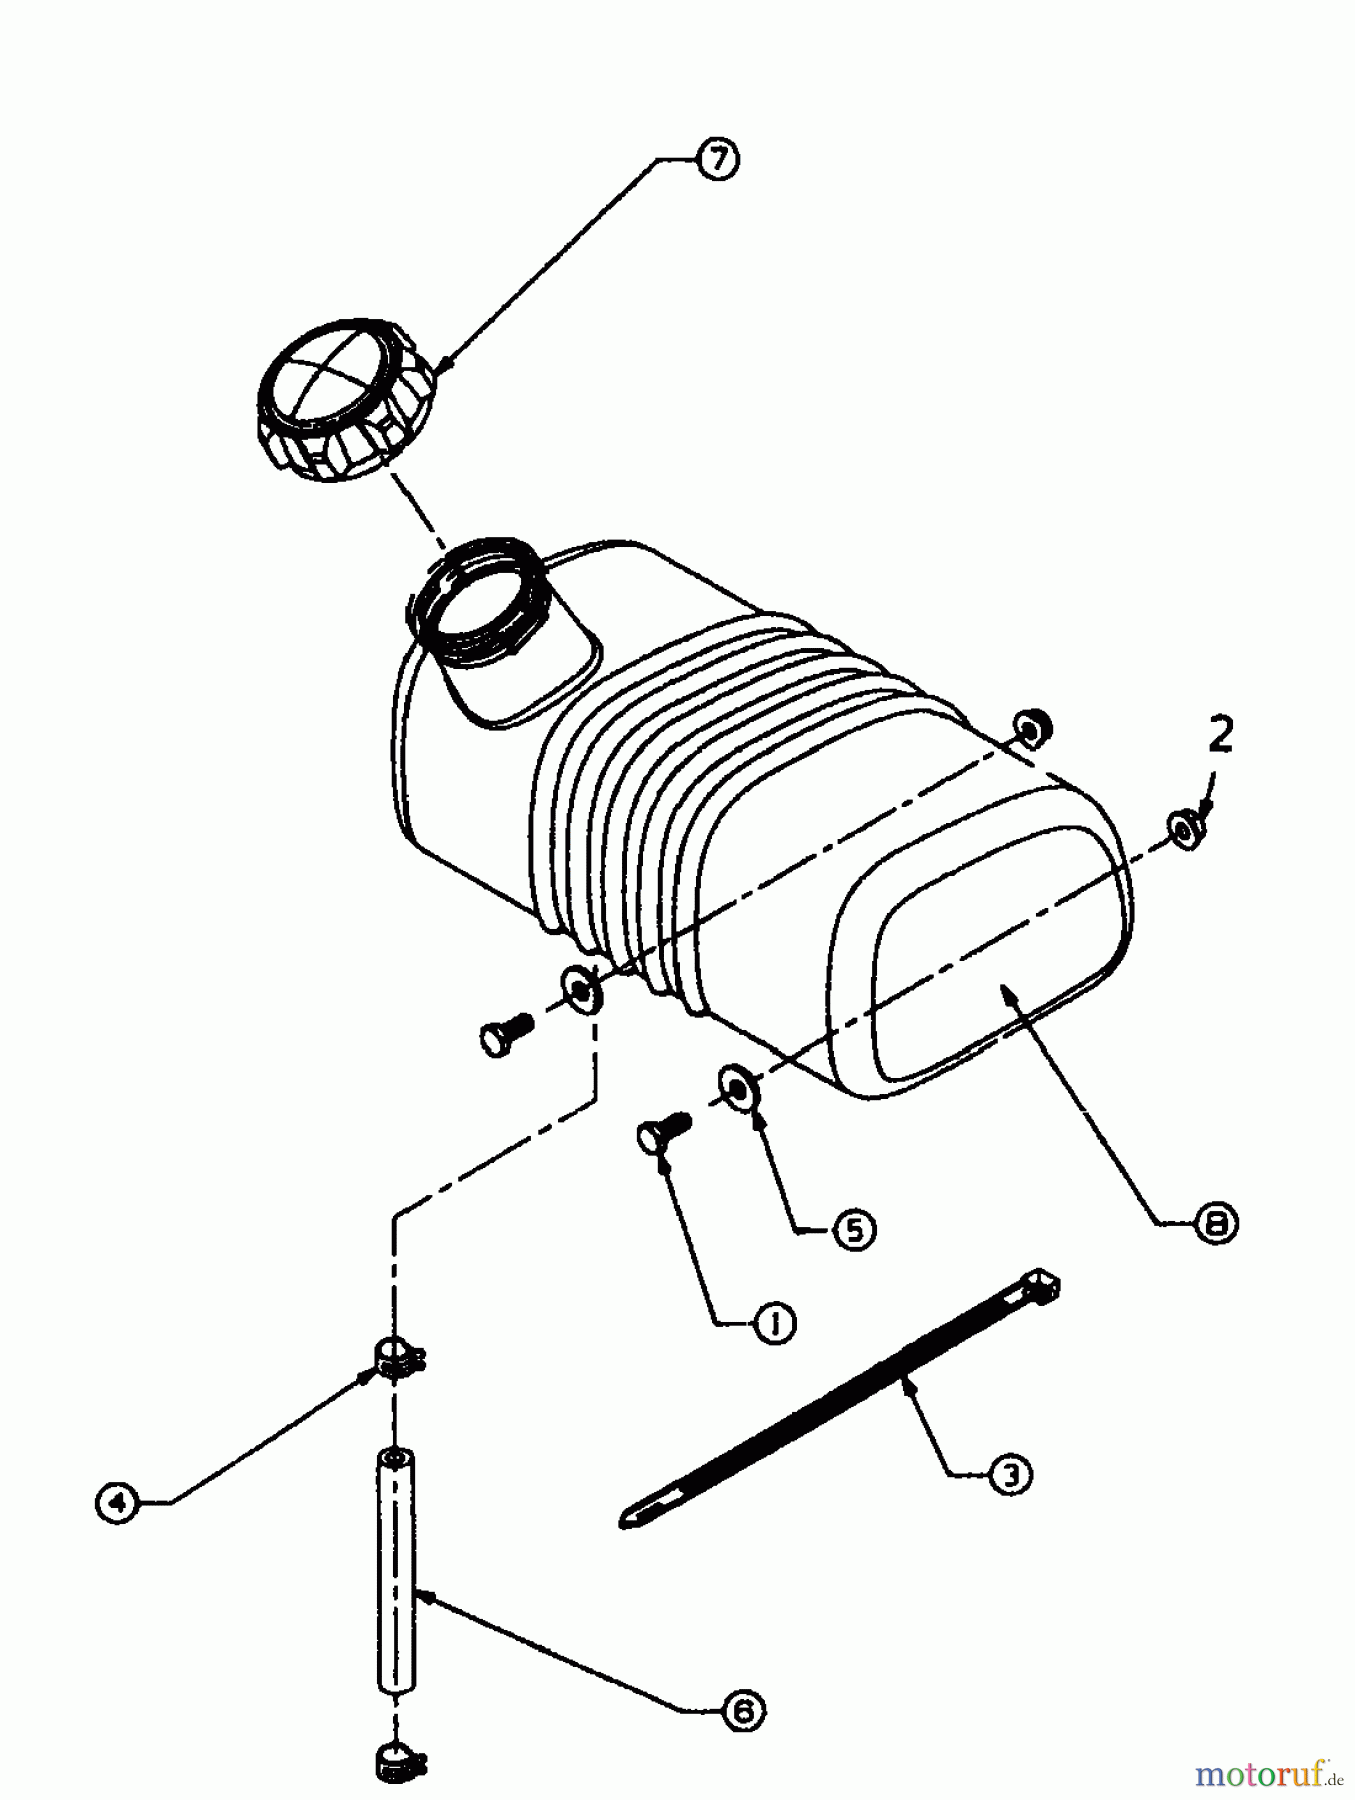  Gutbrod Leaf blower, Blower vac LSH 66-80 04201.04  (1996) Fuel tank